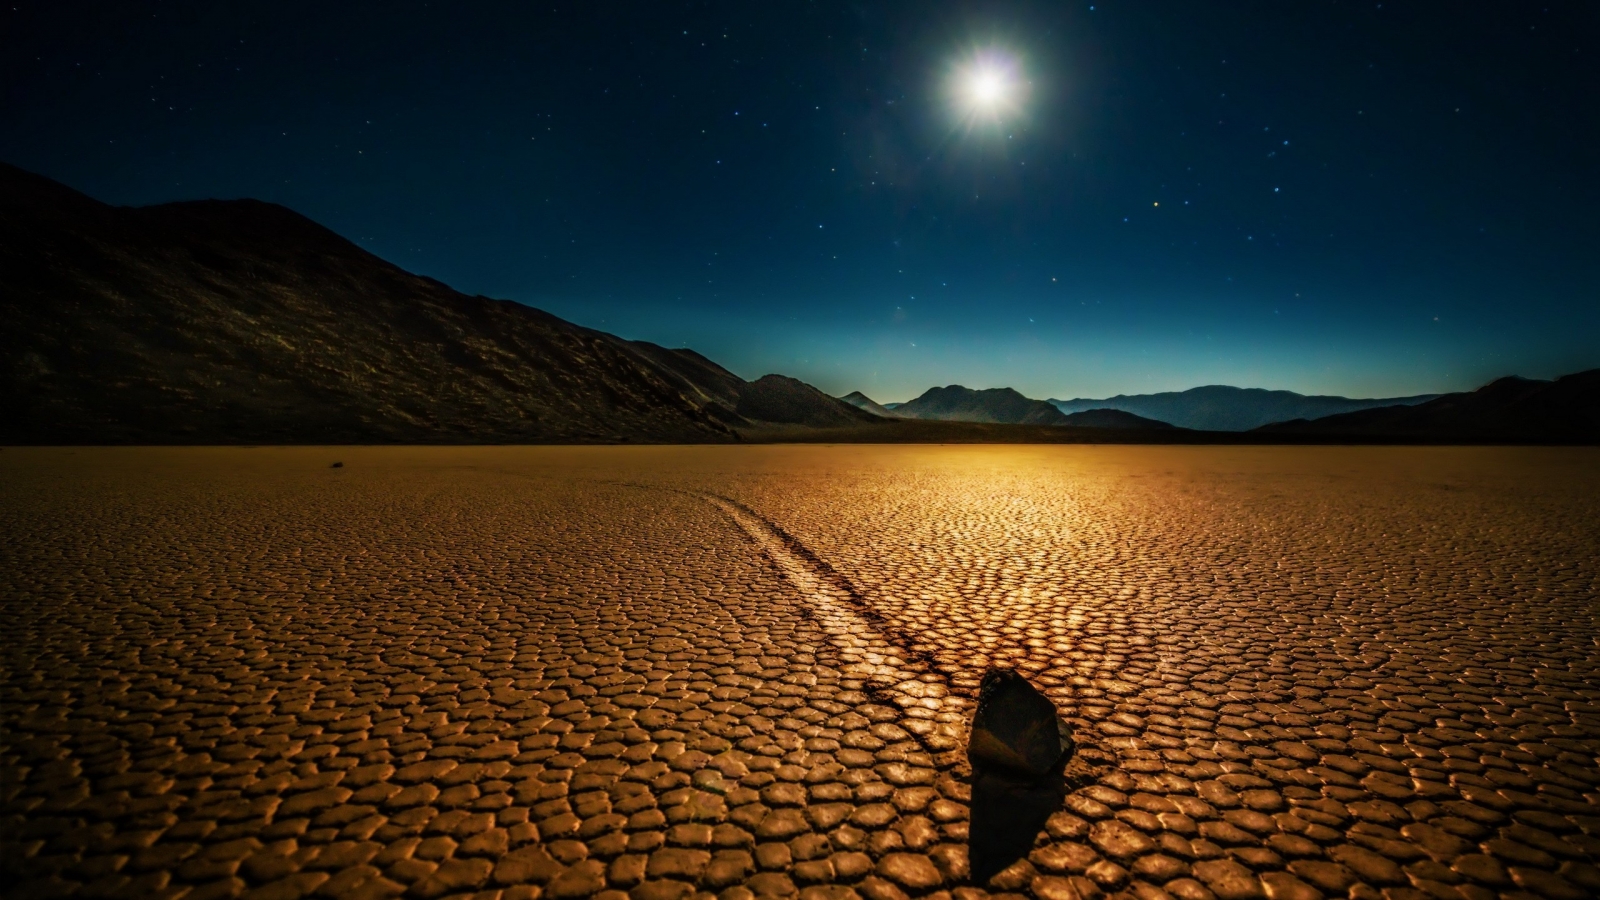 Desert Night Landscape for 1600 x 900 HDTV resolution